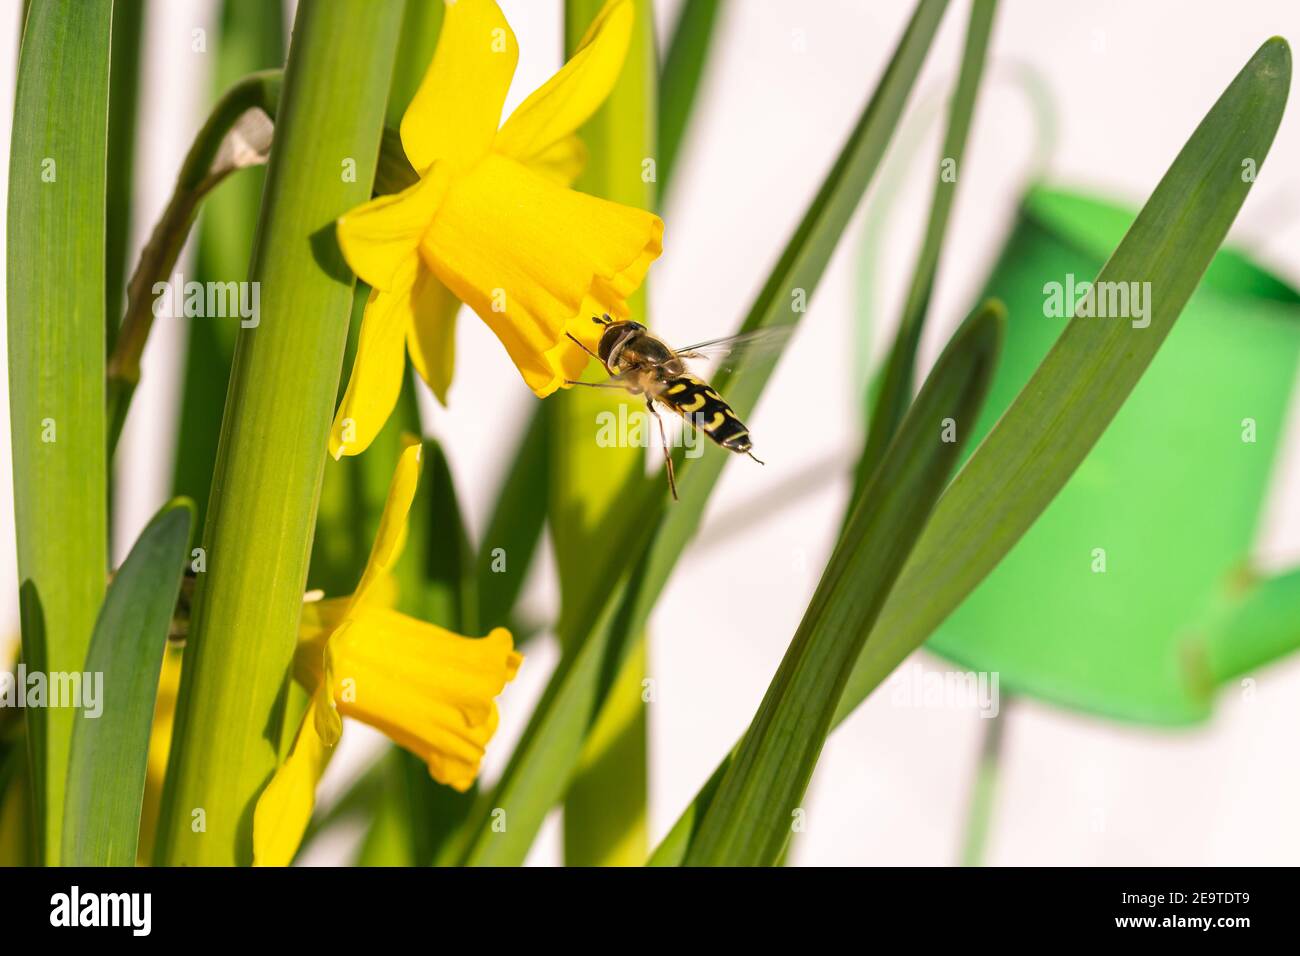 Auf einer Gruppe von Narzissen blüht eine Schwebefliege (syrphidae) Sonniger Frühlingstag mit unscharfem Bokeh-Hintergrund Stockfoto